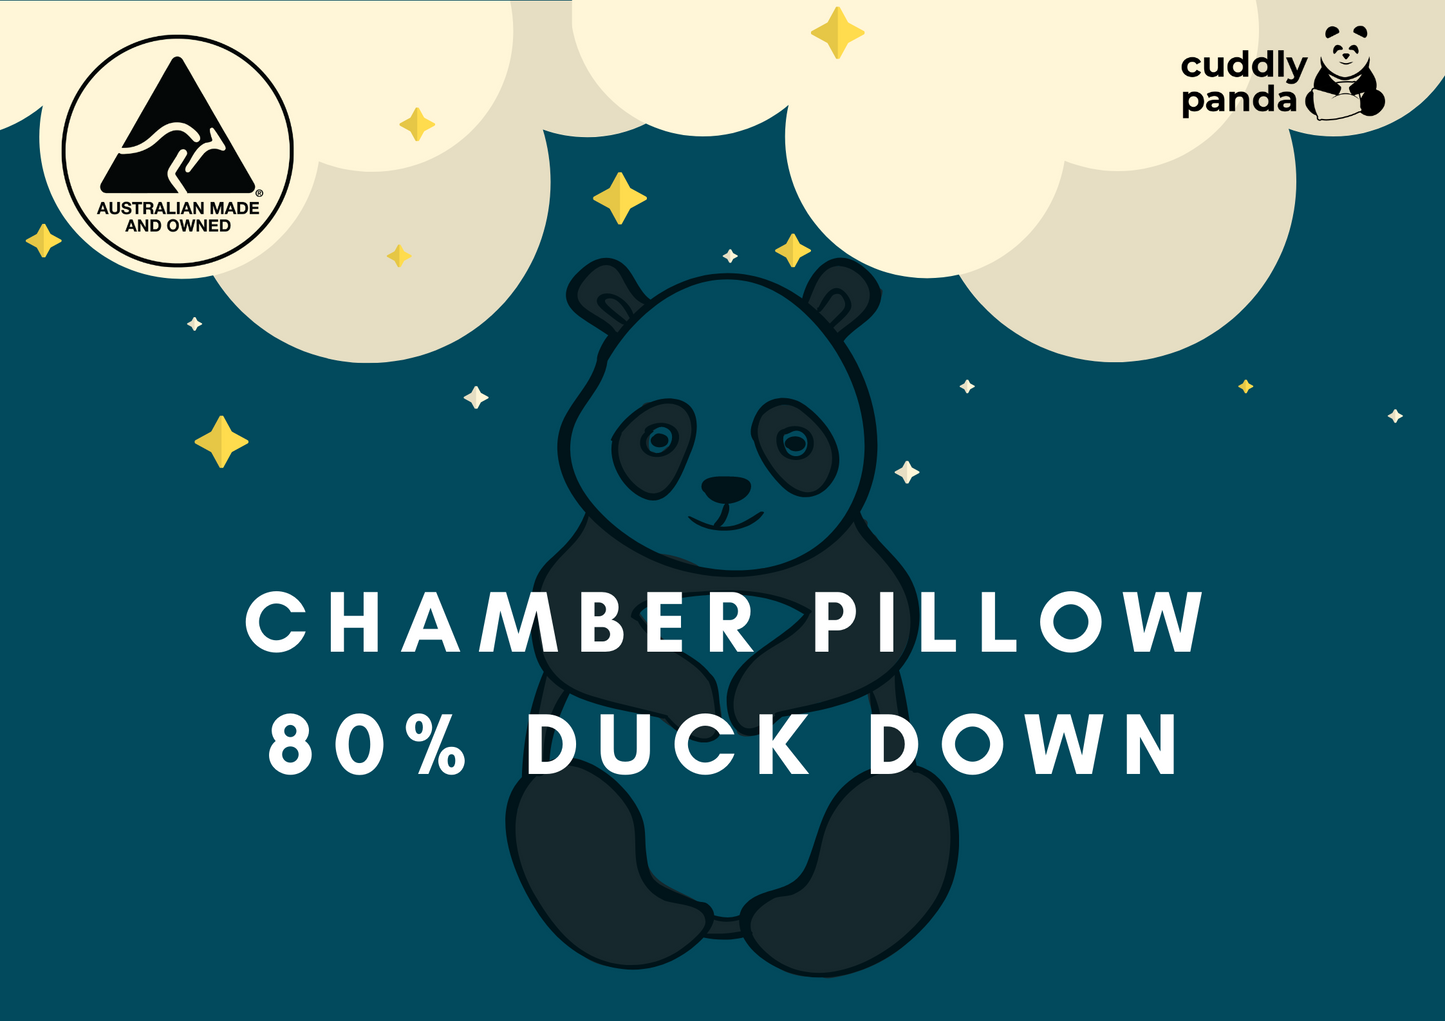 80% Duck Down Chamber Pillow - Cuddly Panda Bedding